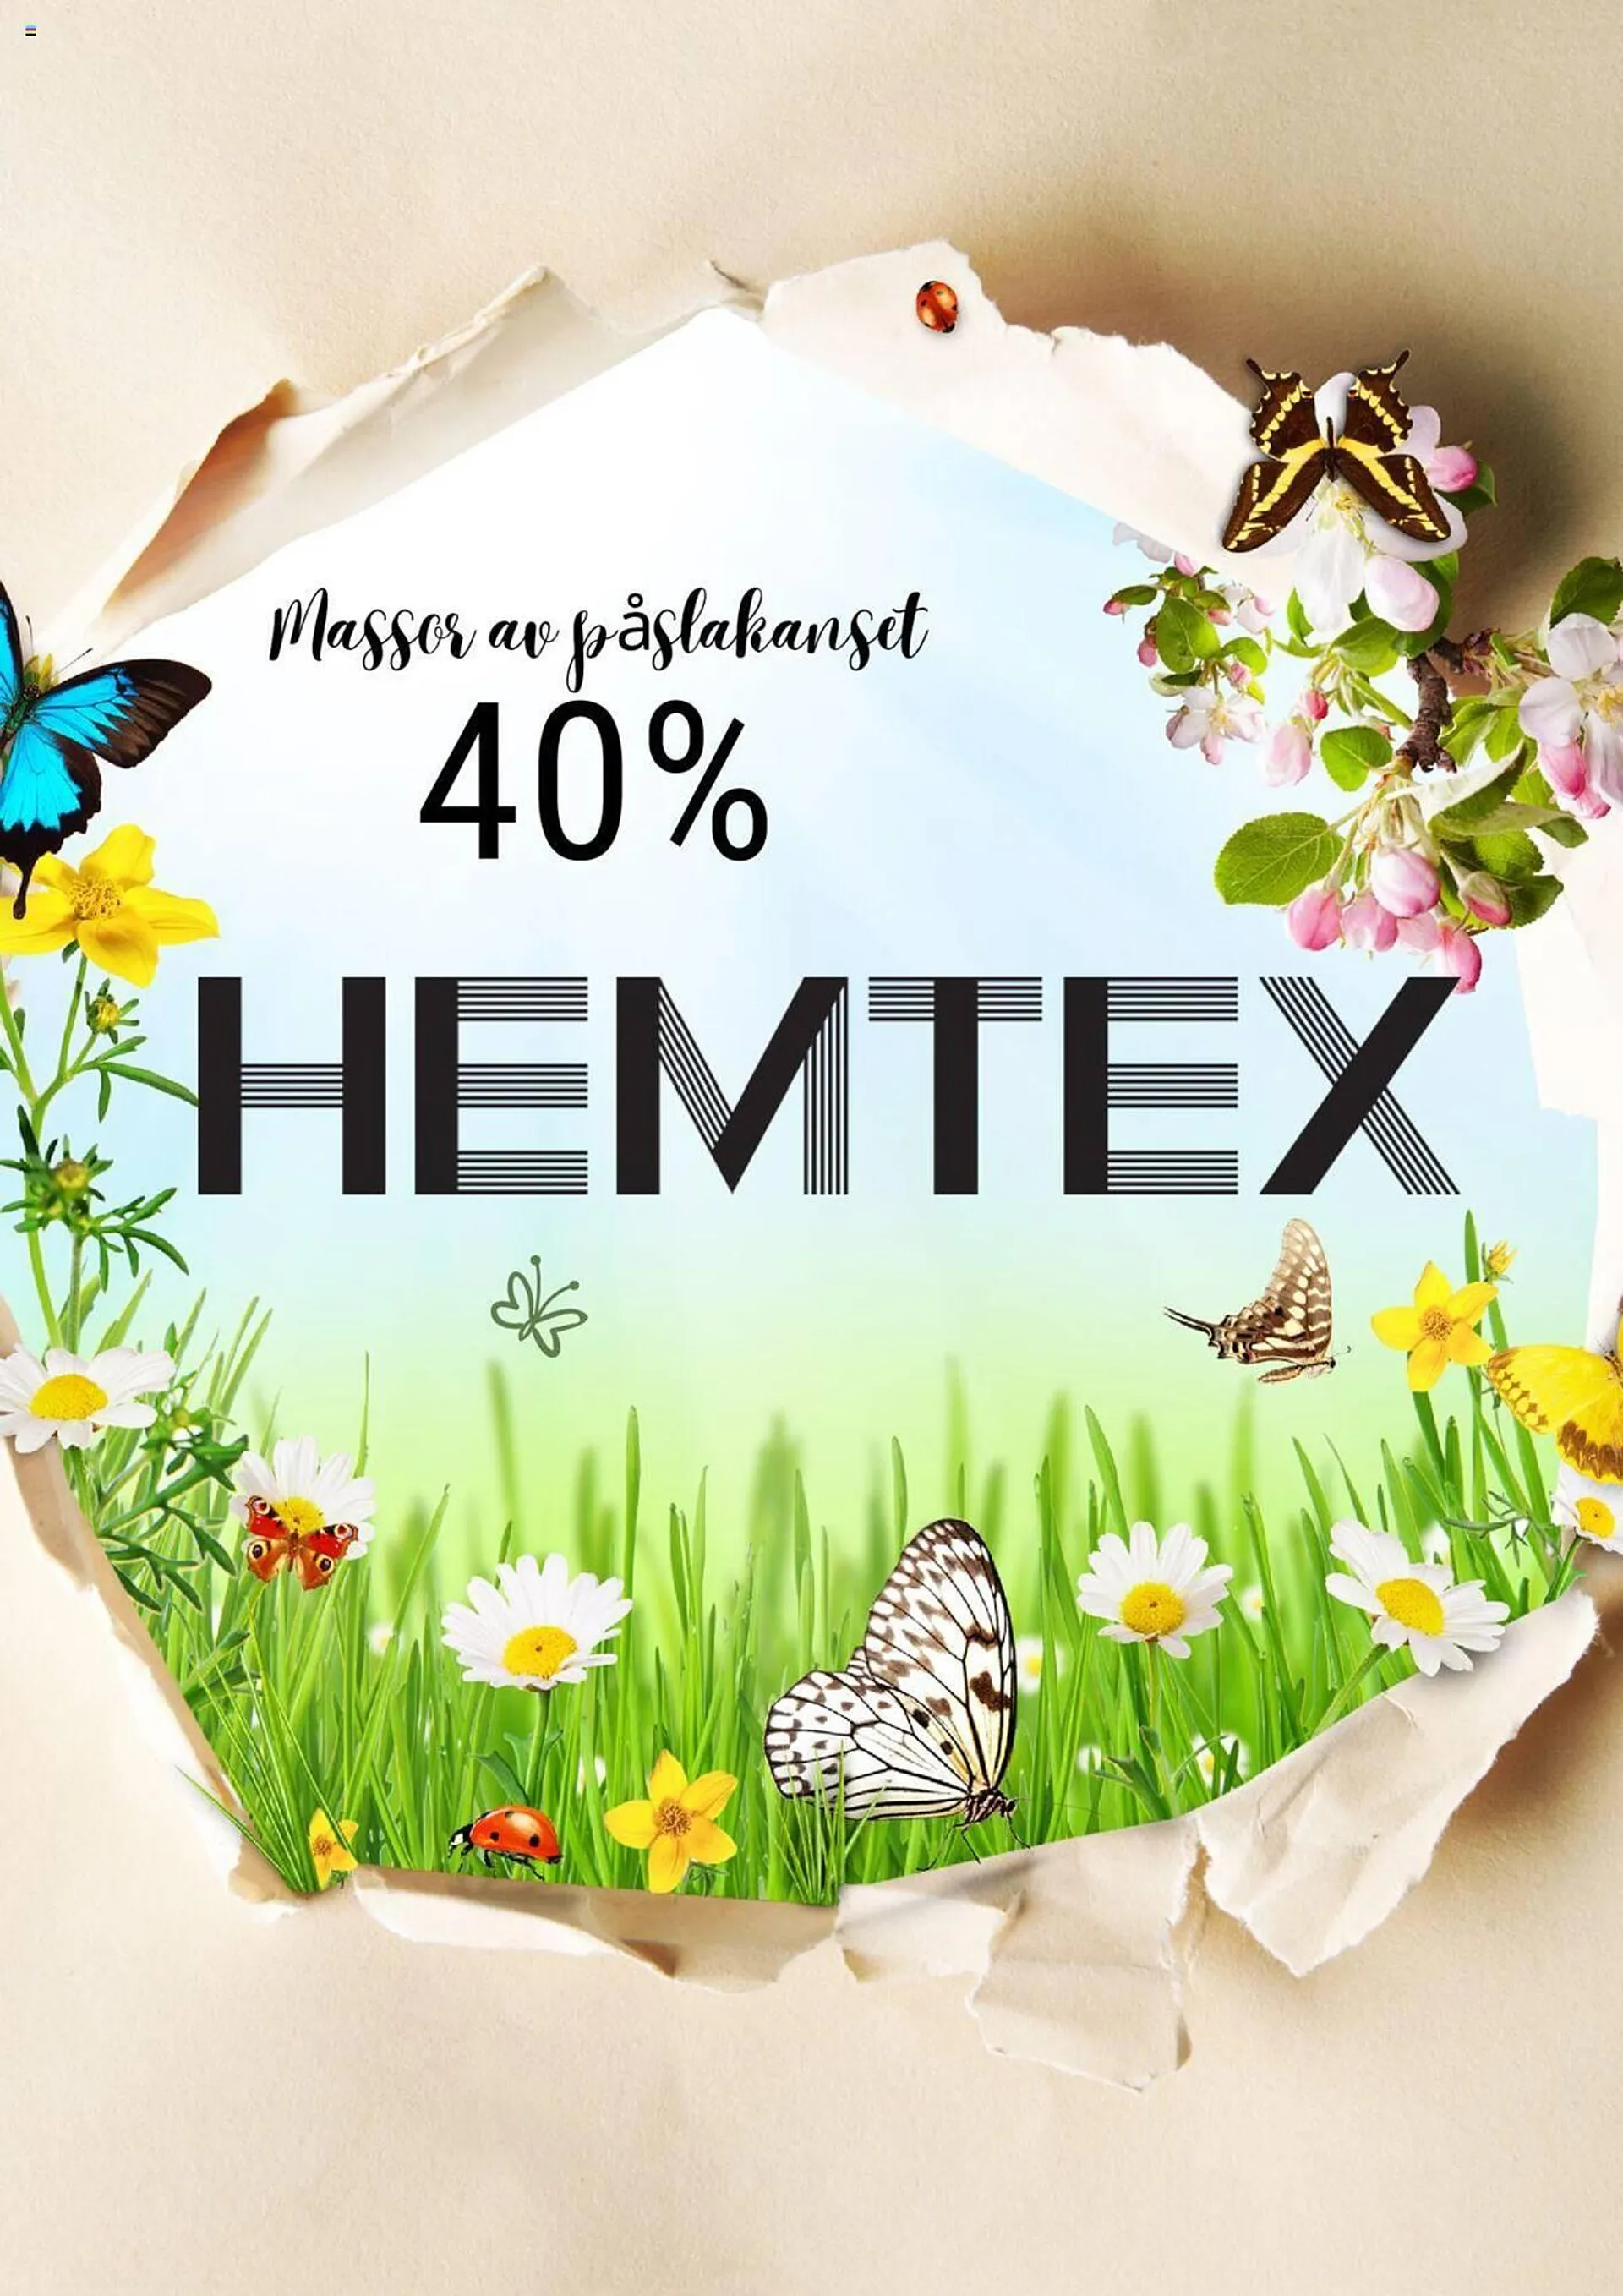 Hemtex reklamblad - 1